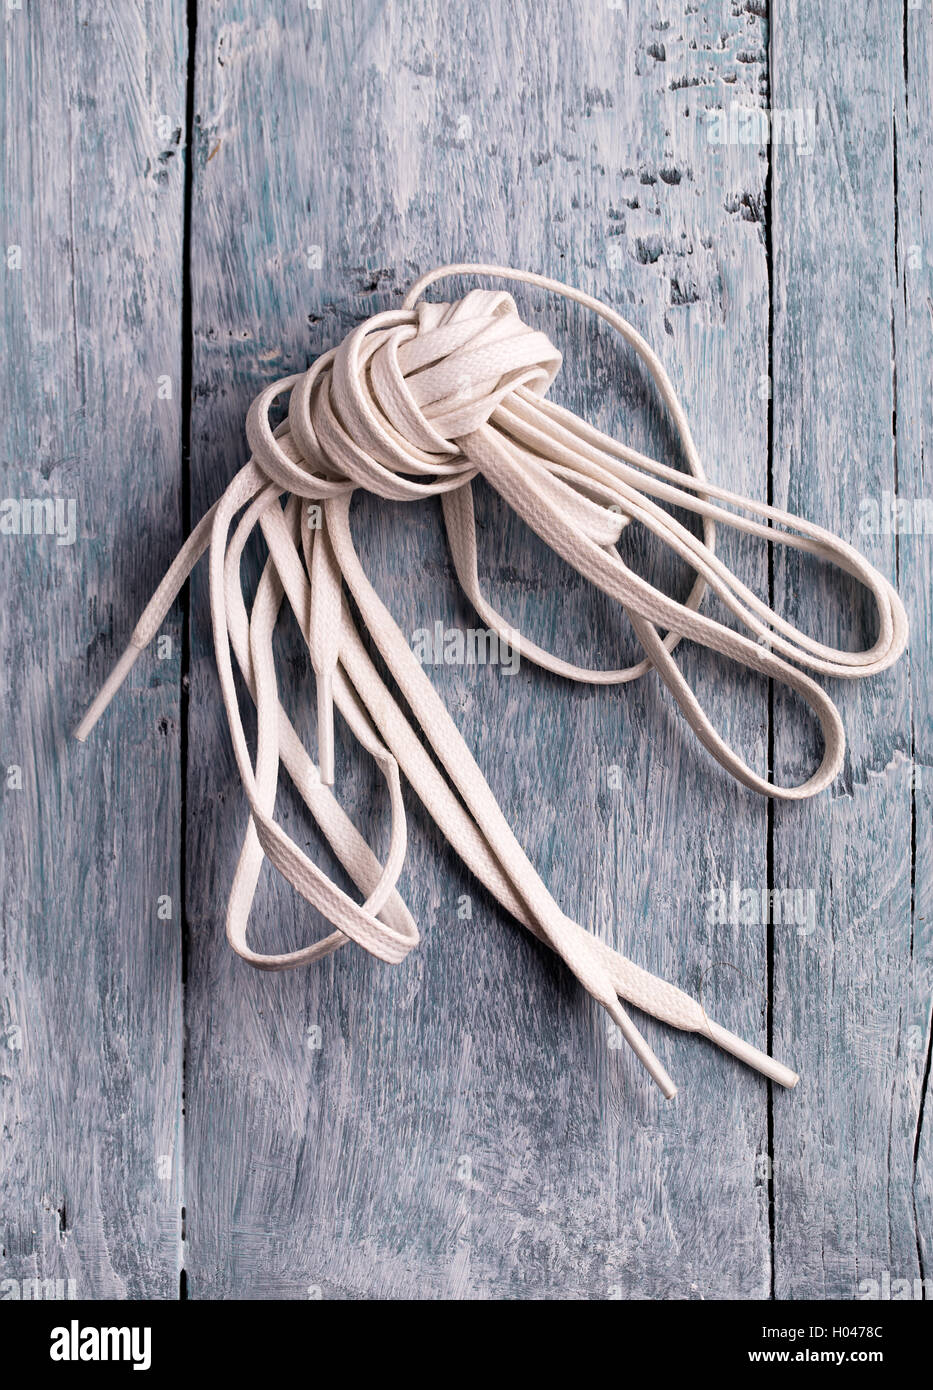 White shoelace Stock Photo